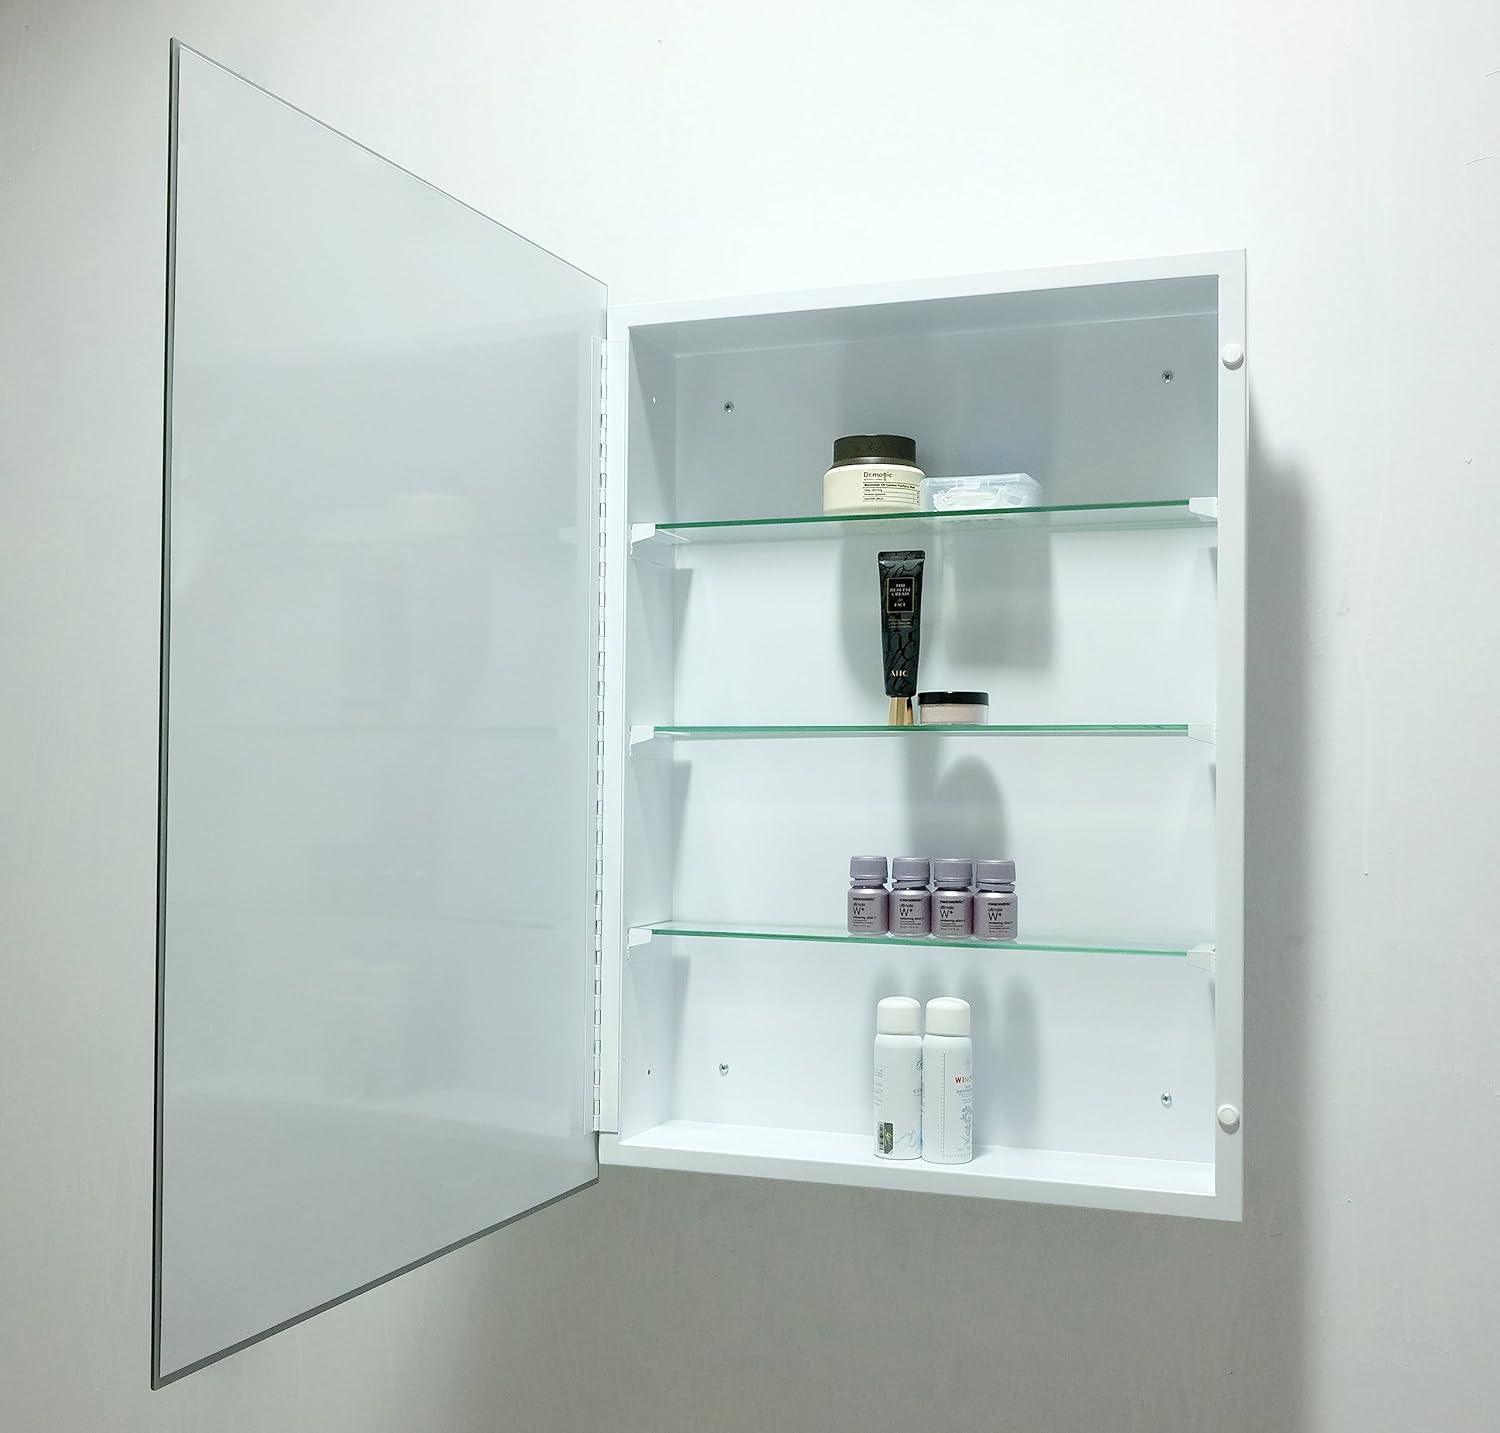 Botiquín de baño, gabinete rectangular con espejo biselado sin marco, gabinete - VIRTUAL MUEBLES